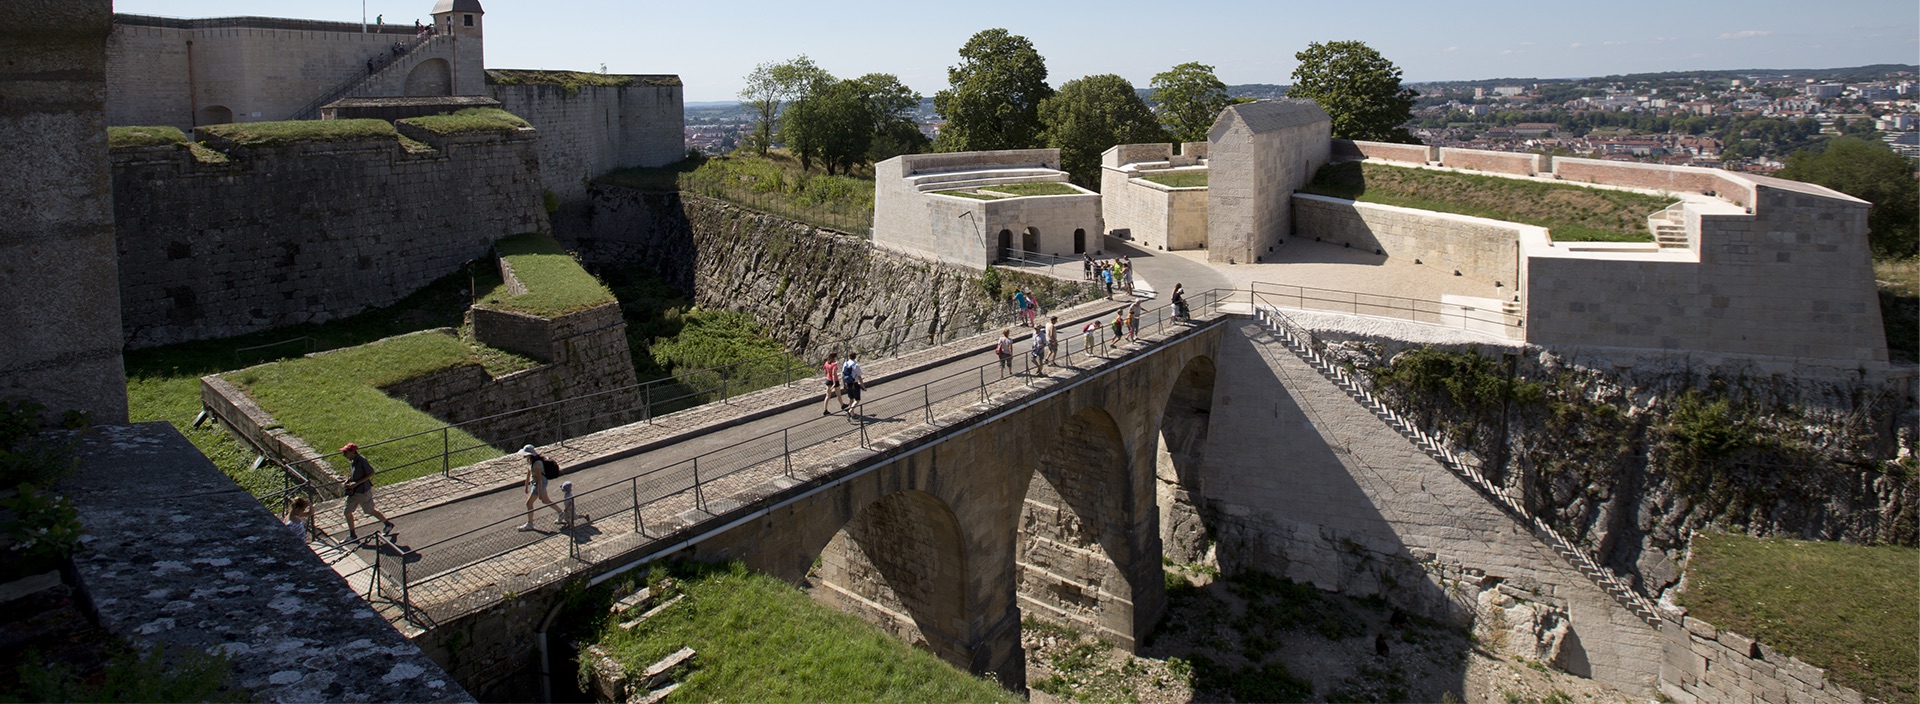 Citadelle de Besançon - Citadelle de Besançon